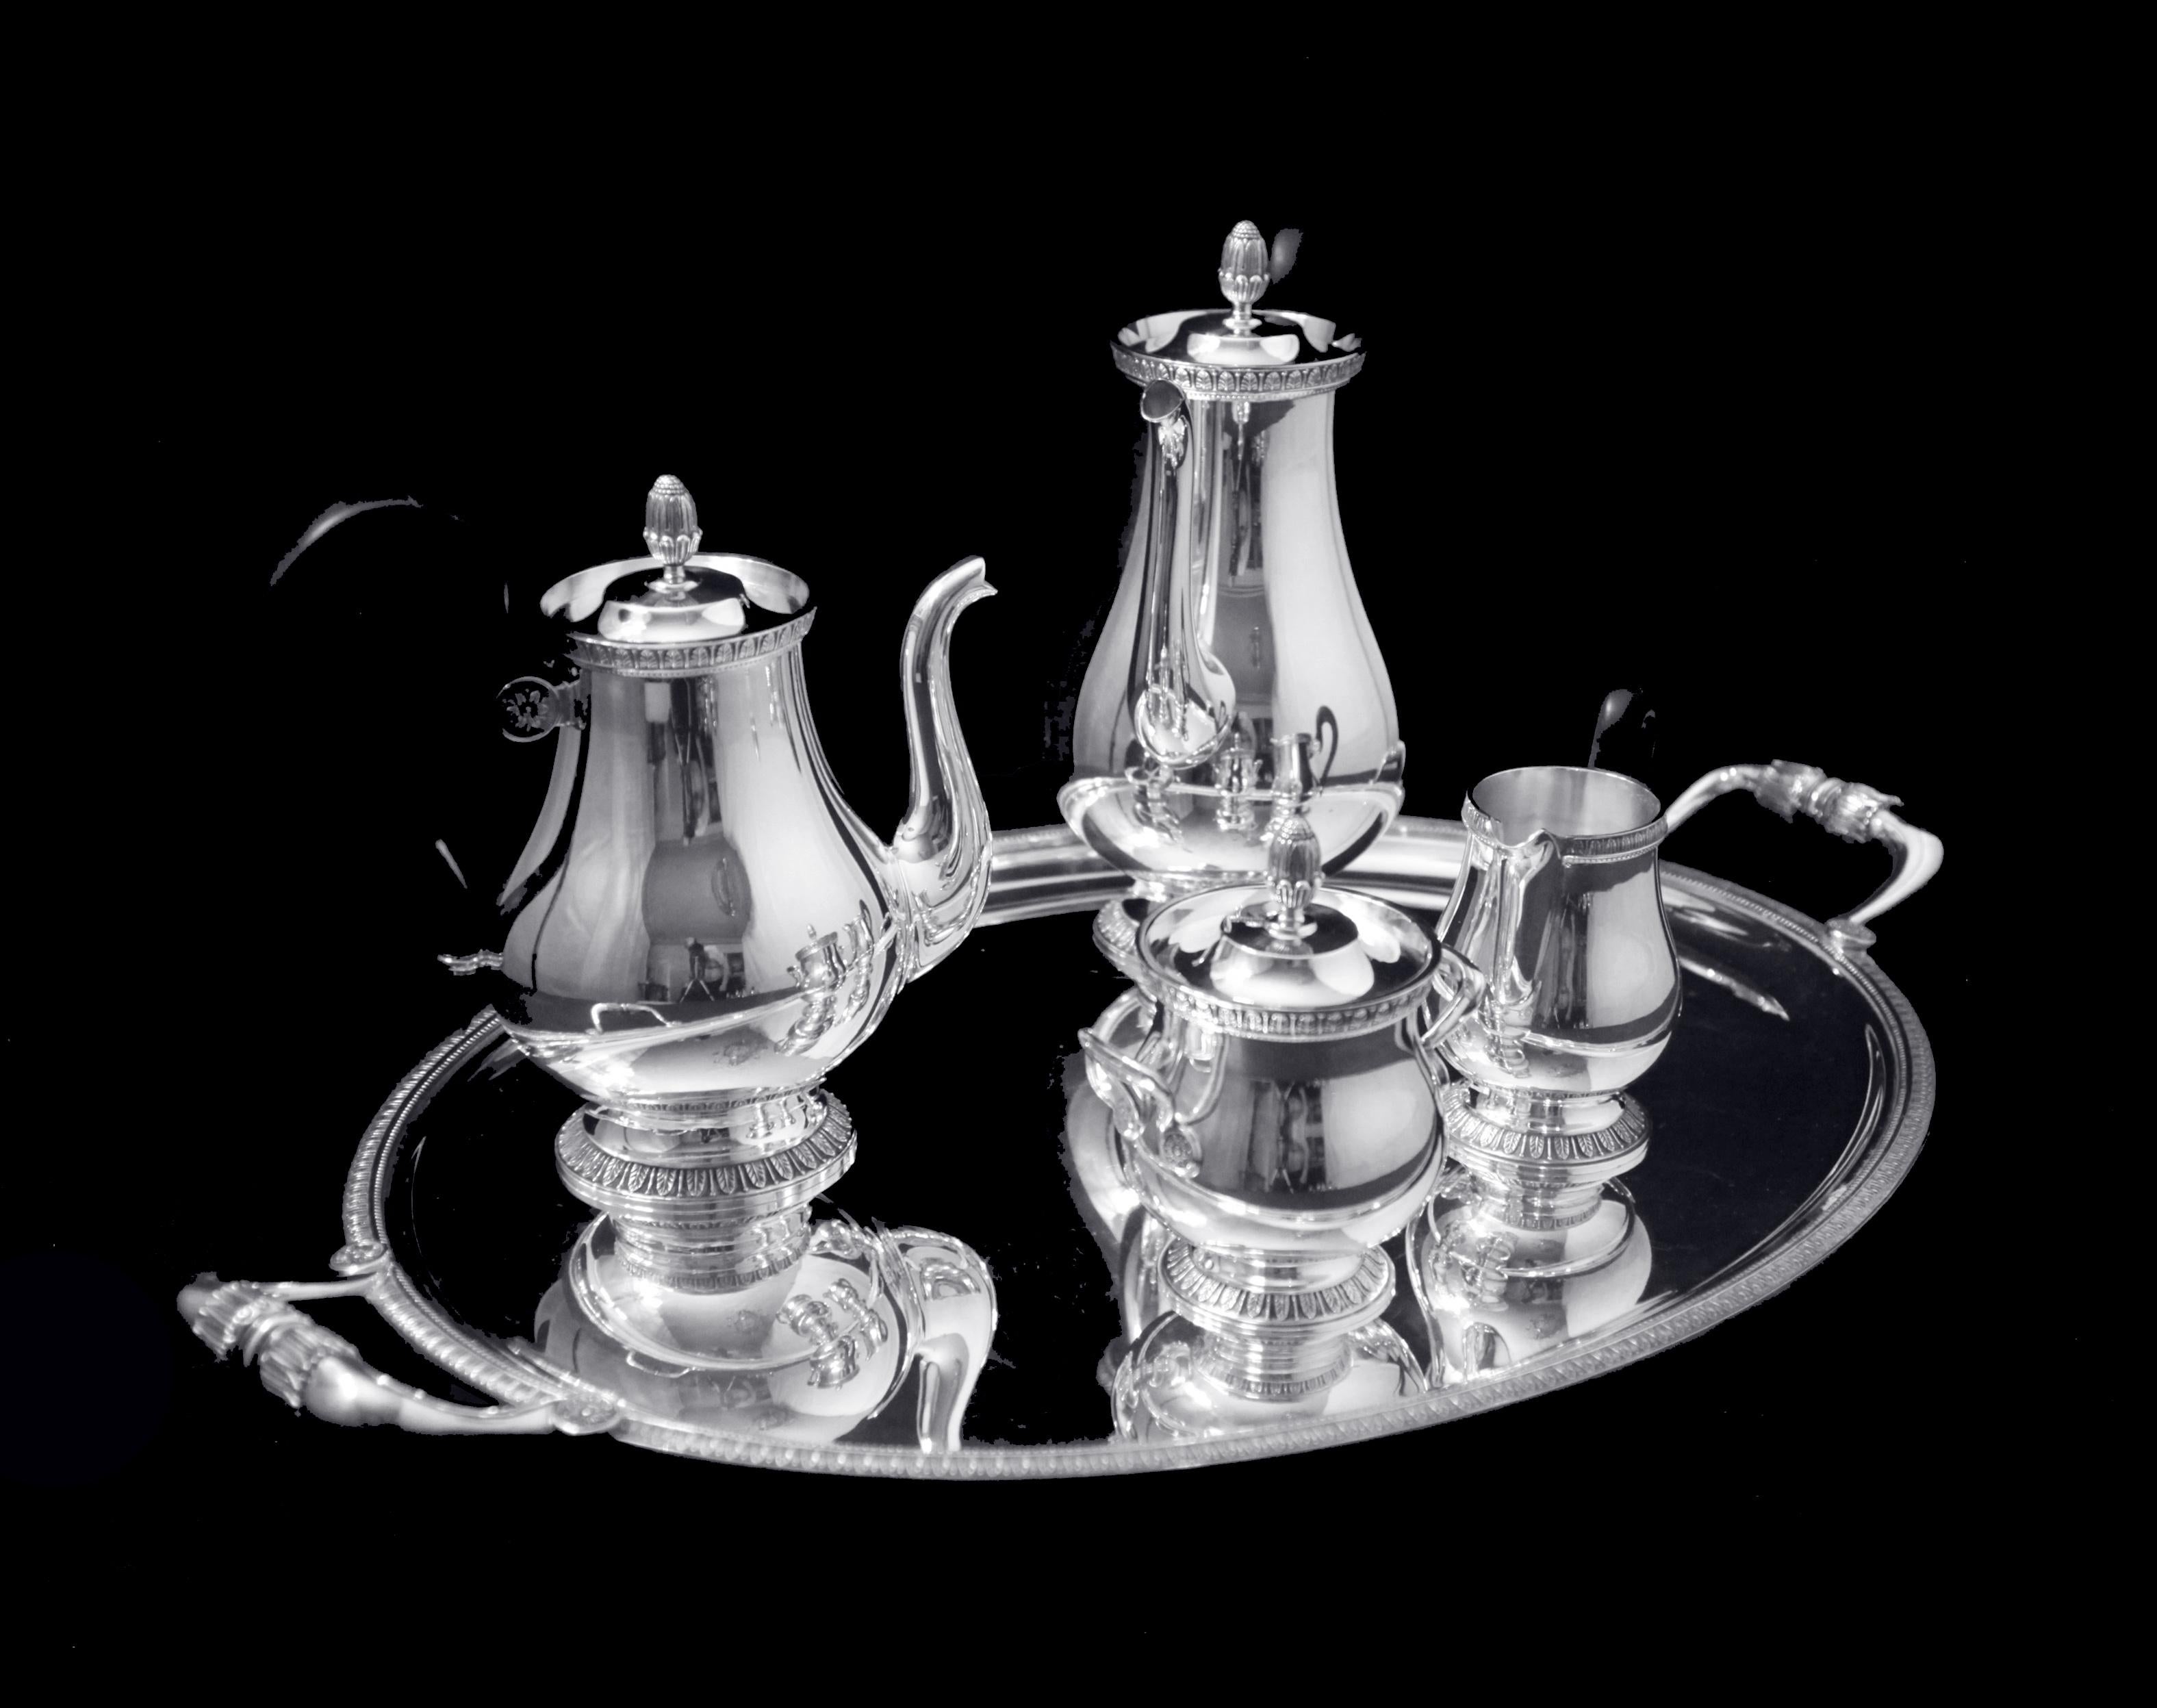 En provenance directe de Paris, un magnifique service à thé de 5 pièces en métal argenté de la Collection Gallia, modèle Louis XVI, par le premier orfèvre de France 